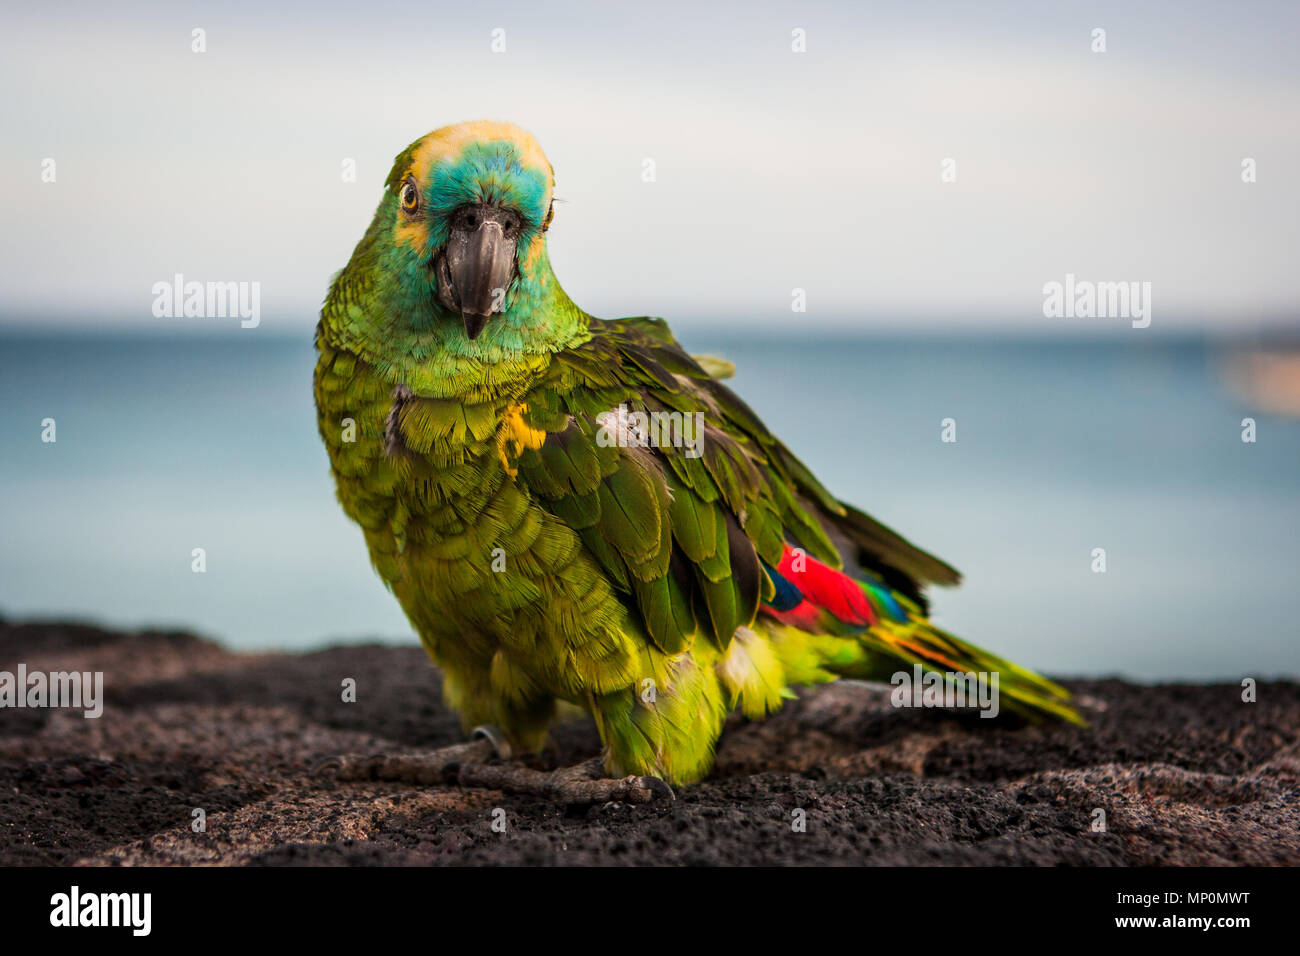 Image détaillée d'un perroquet coloré vert avec des ailes rouges looking at camera. Lanzarote, îles Canaries, Espagne. Banque D'Images